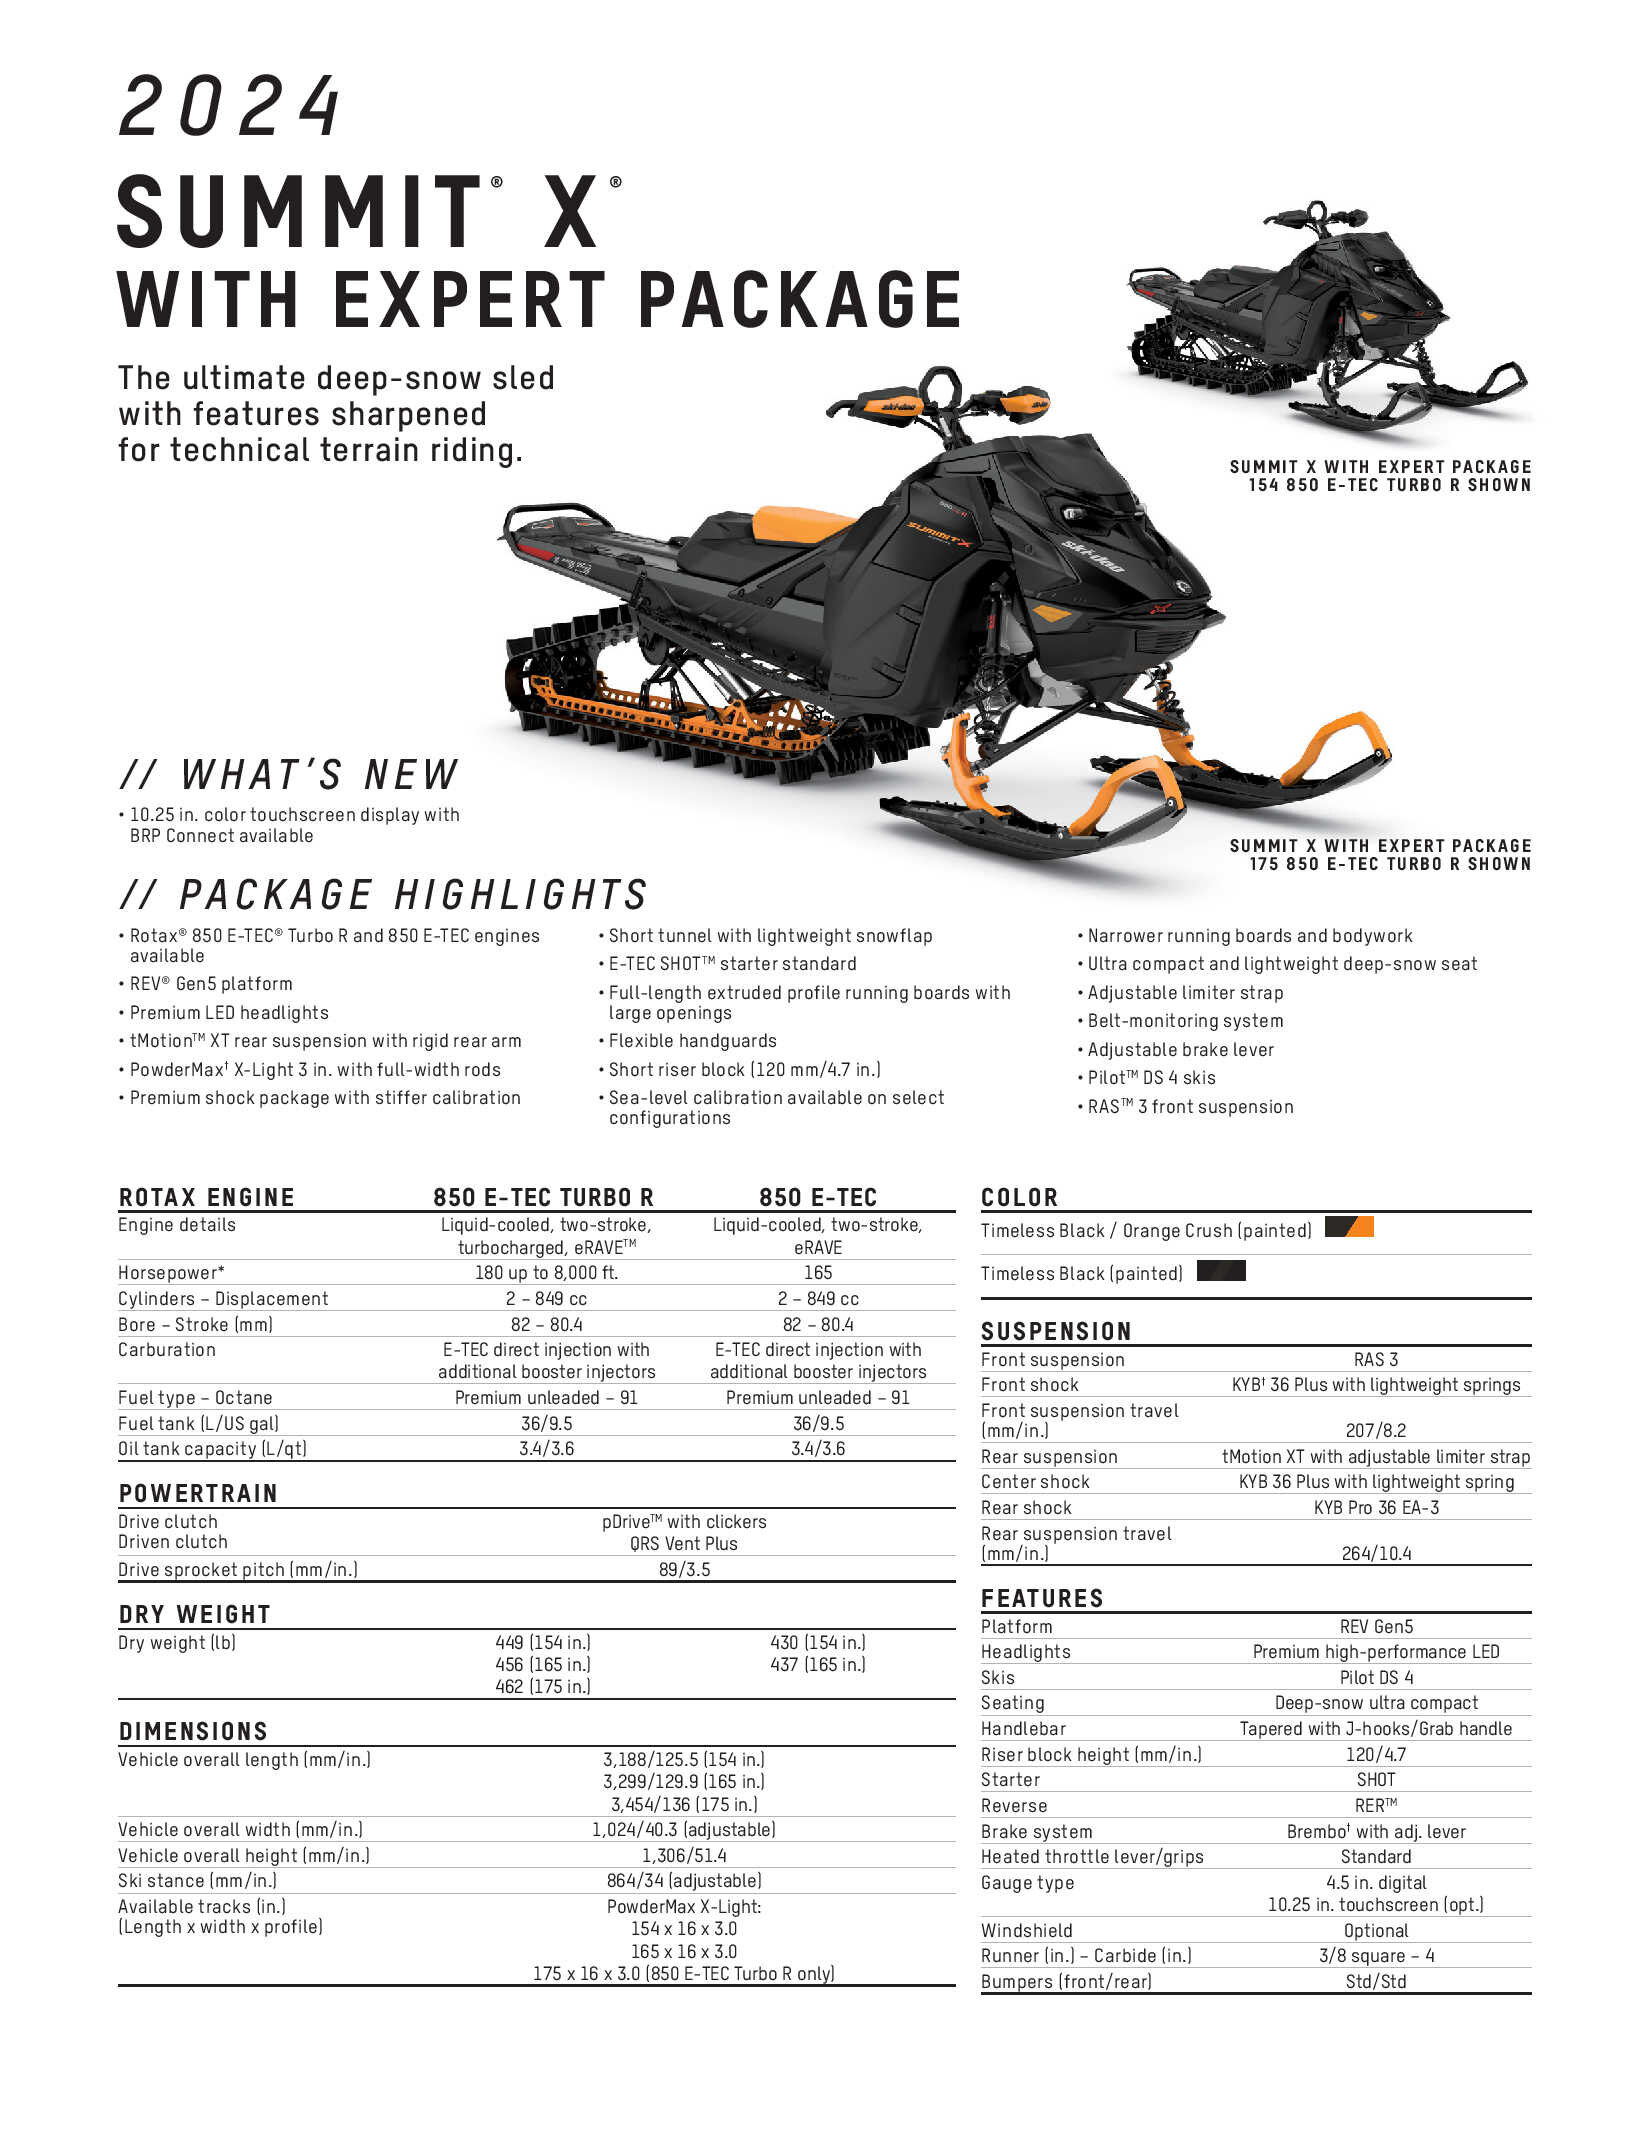 2024 Ski-Doo Summit X Expert Specs